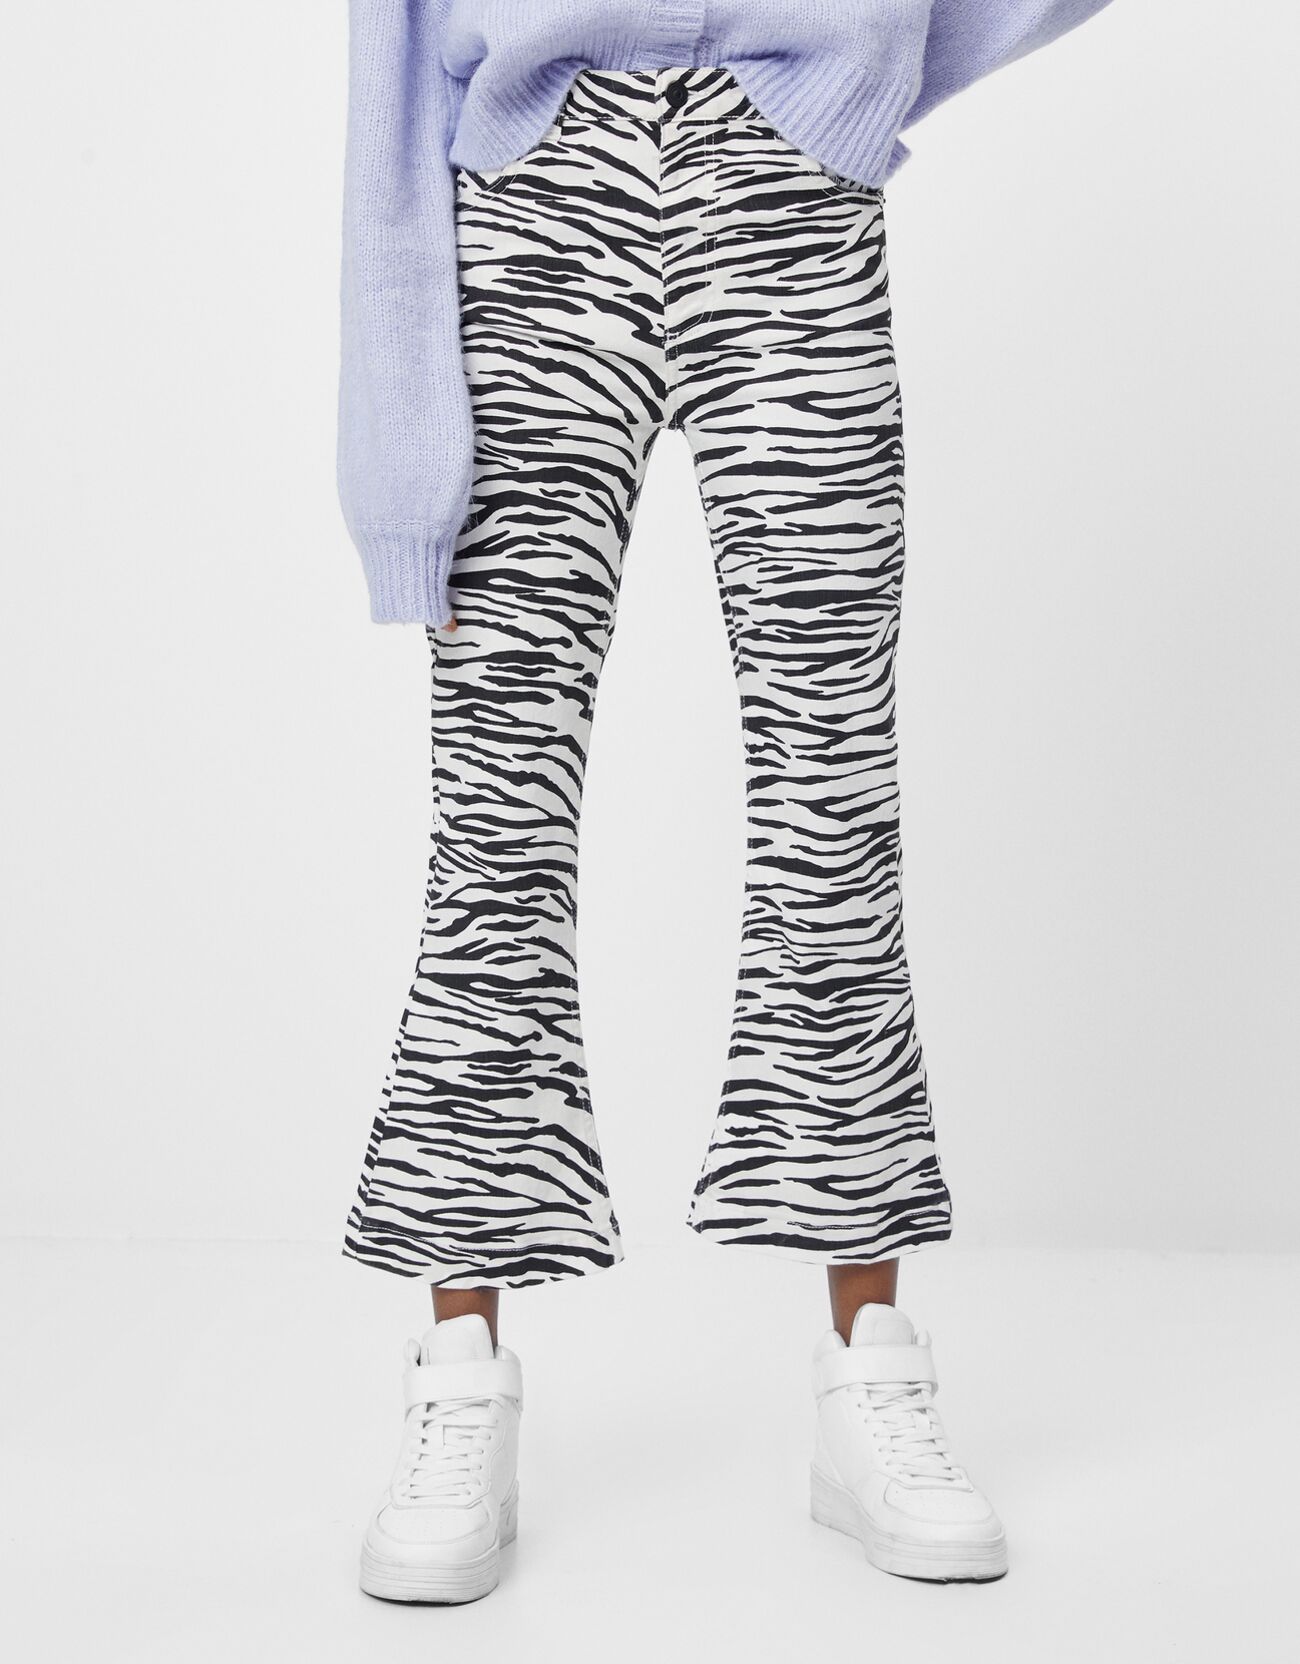 Расклешенные брюки с принтом «зебра» Белый/Черный Bershka